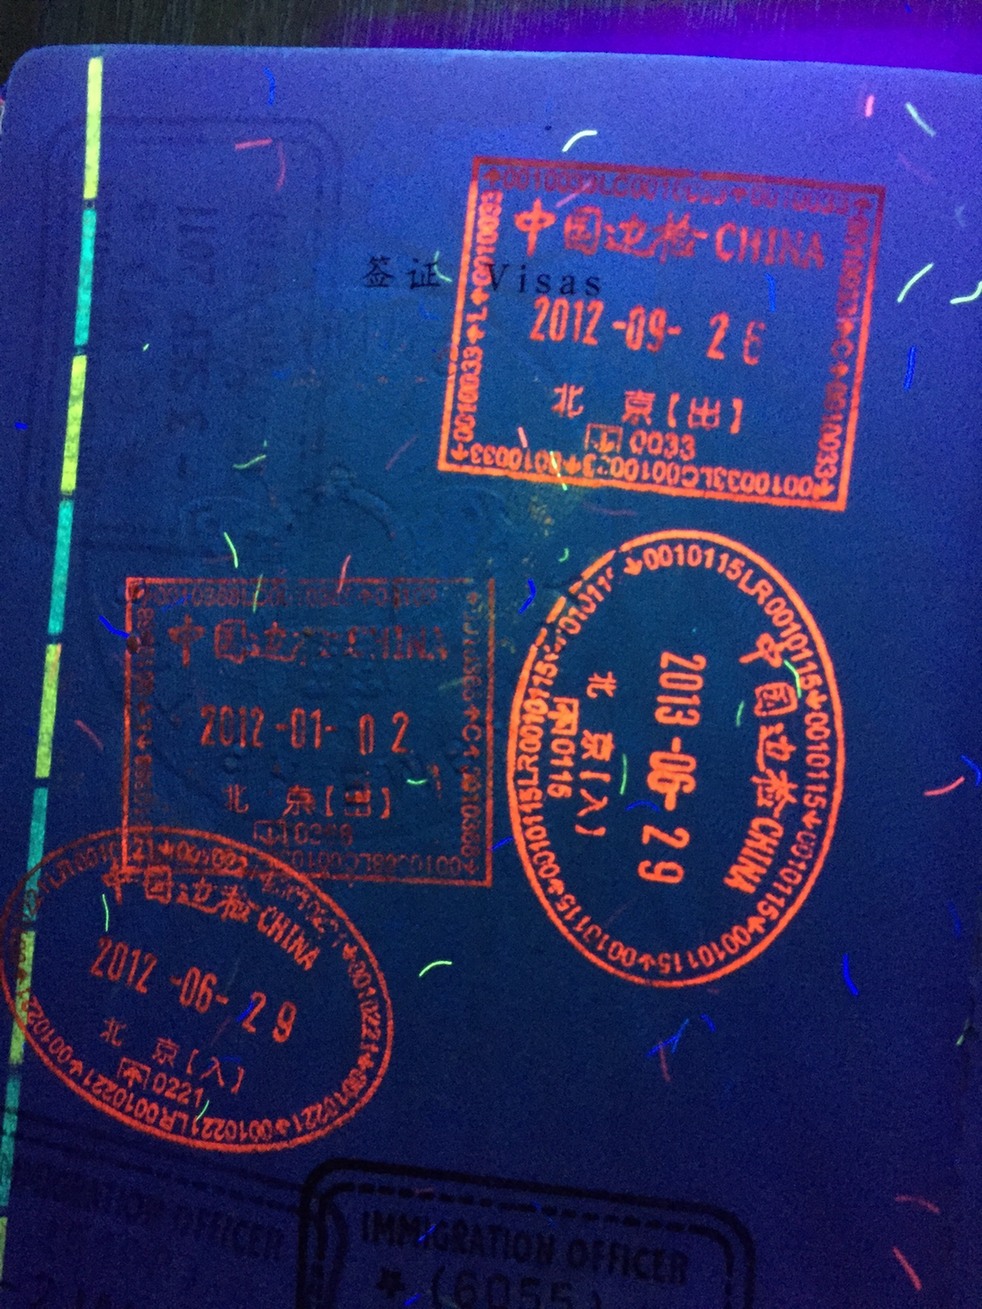 紫外线灯照射下有锦绣江山图案的中国护照